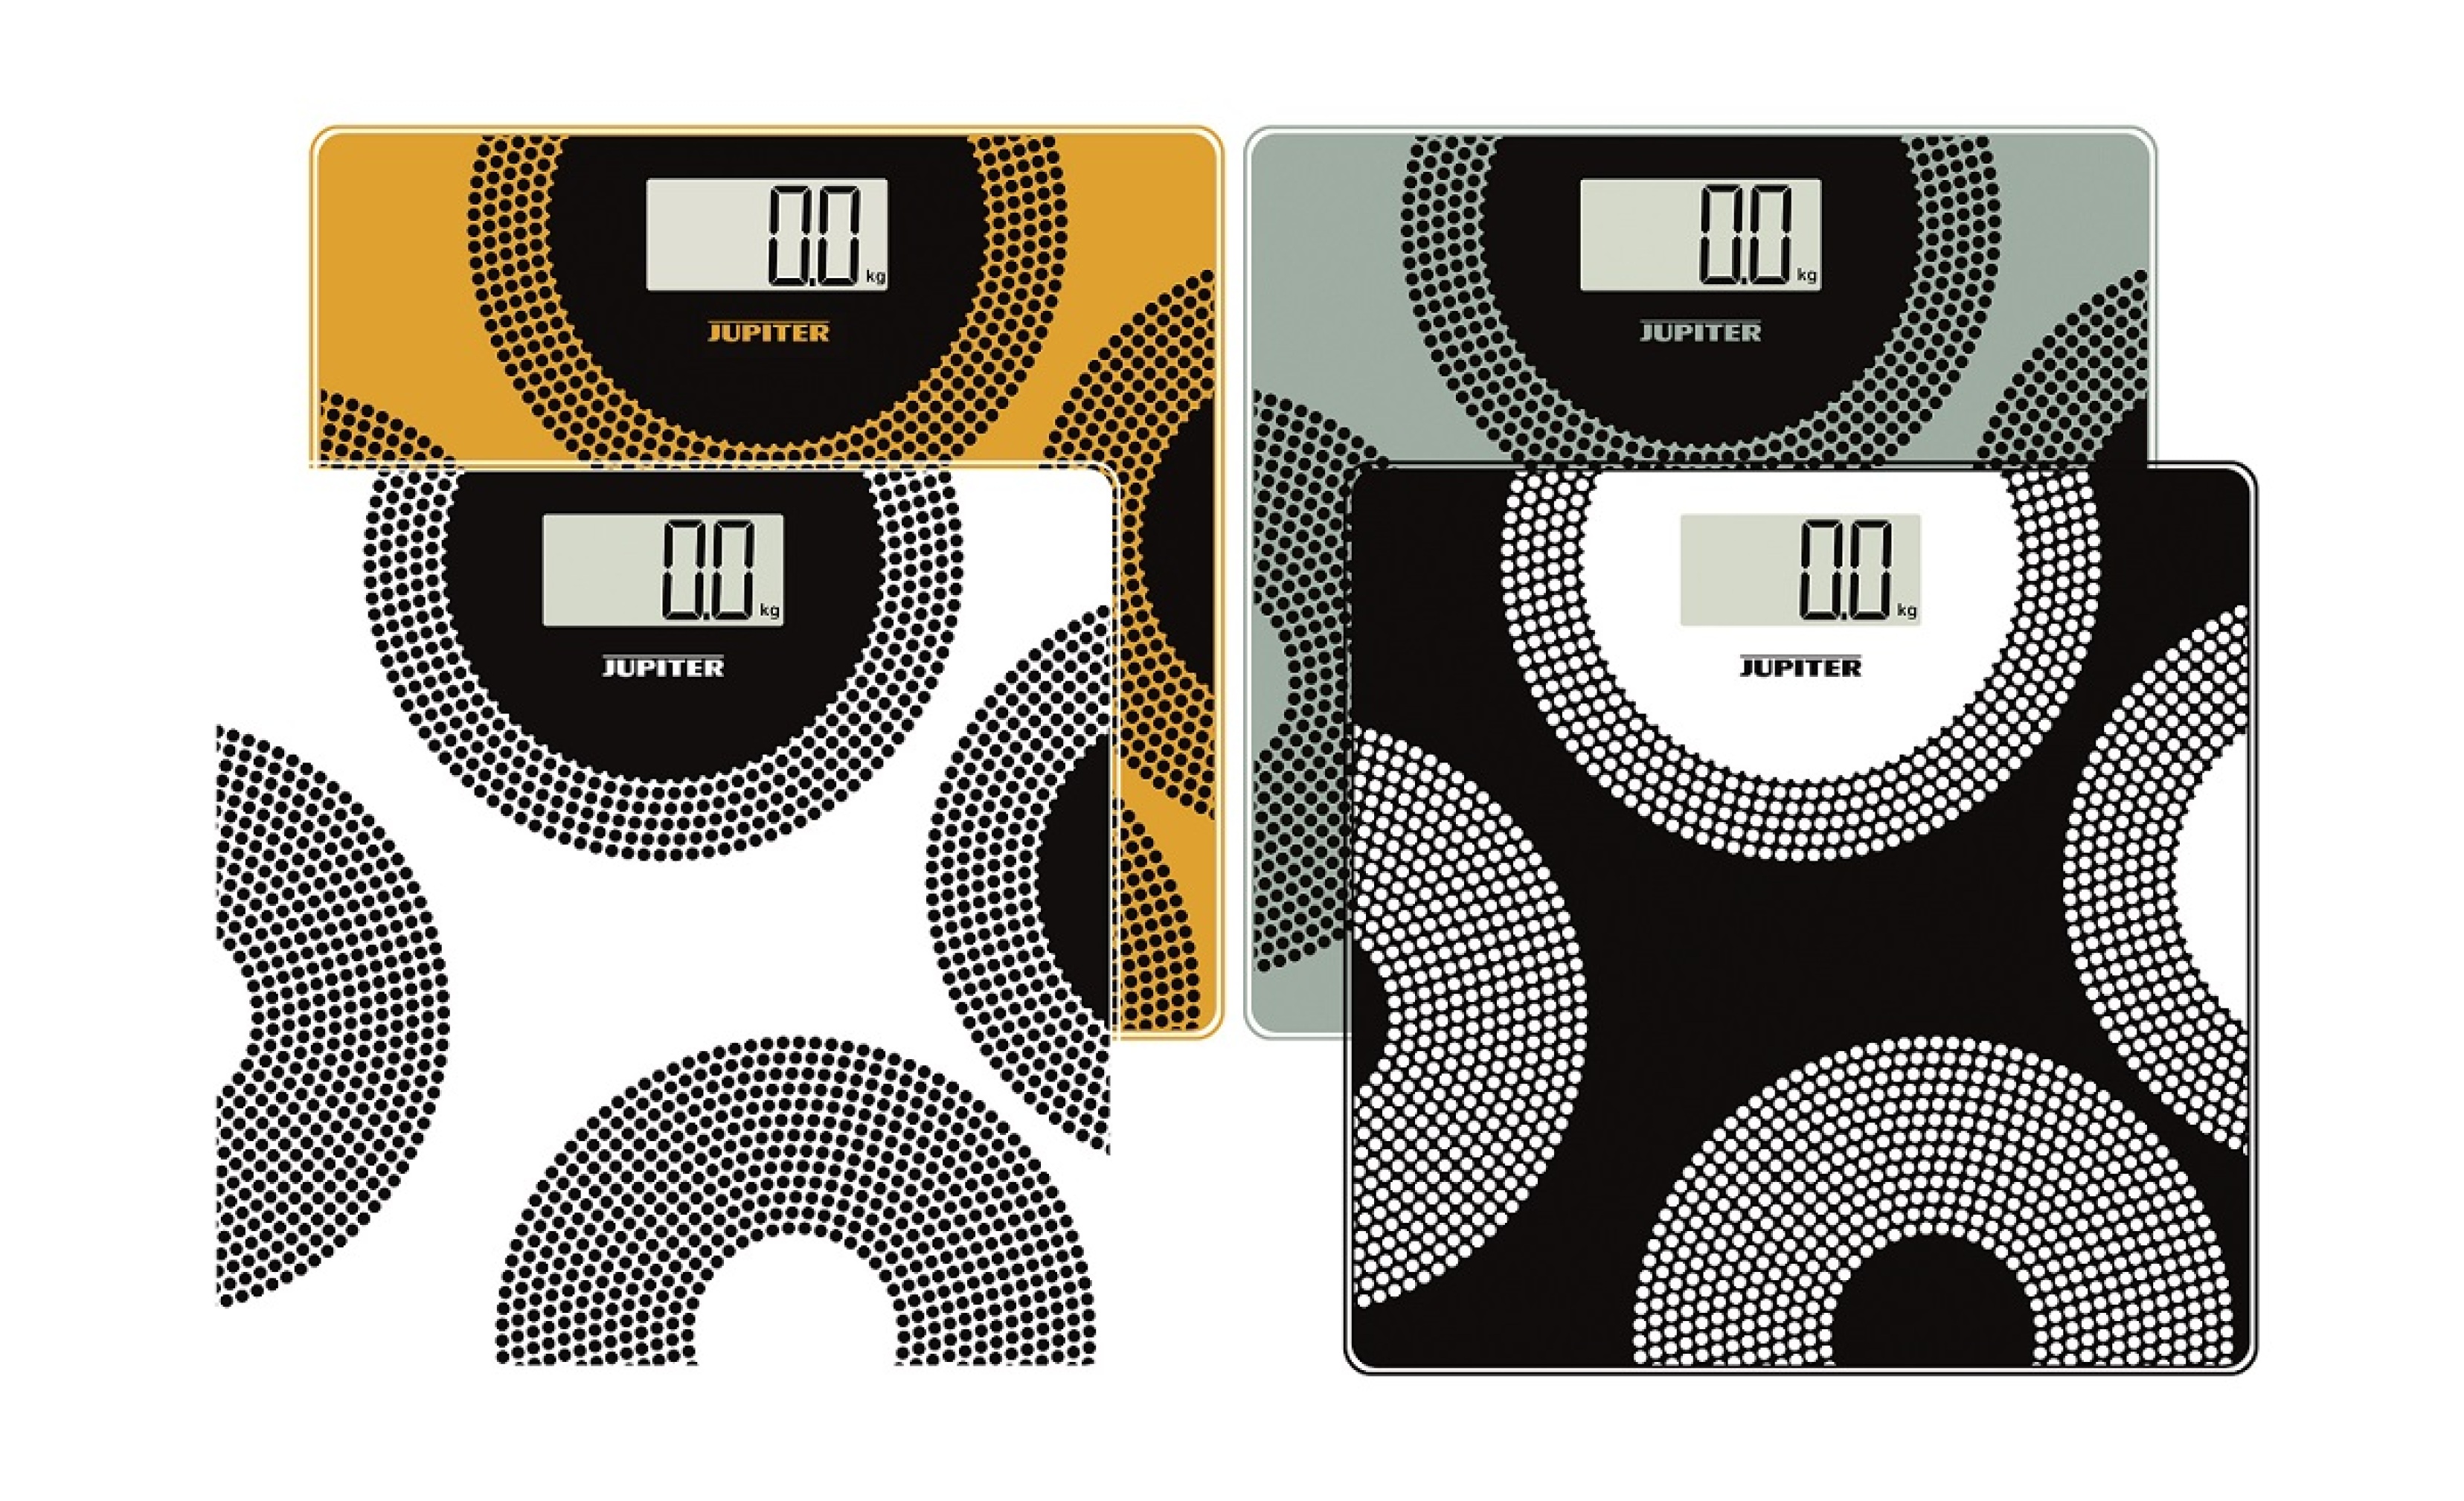  ترازوی دیجیتال ژوبیتر ، ترازوی وزن کشی ژوبیتر 